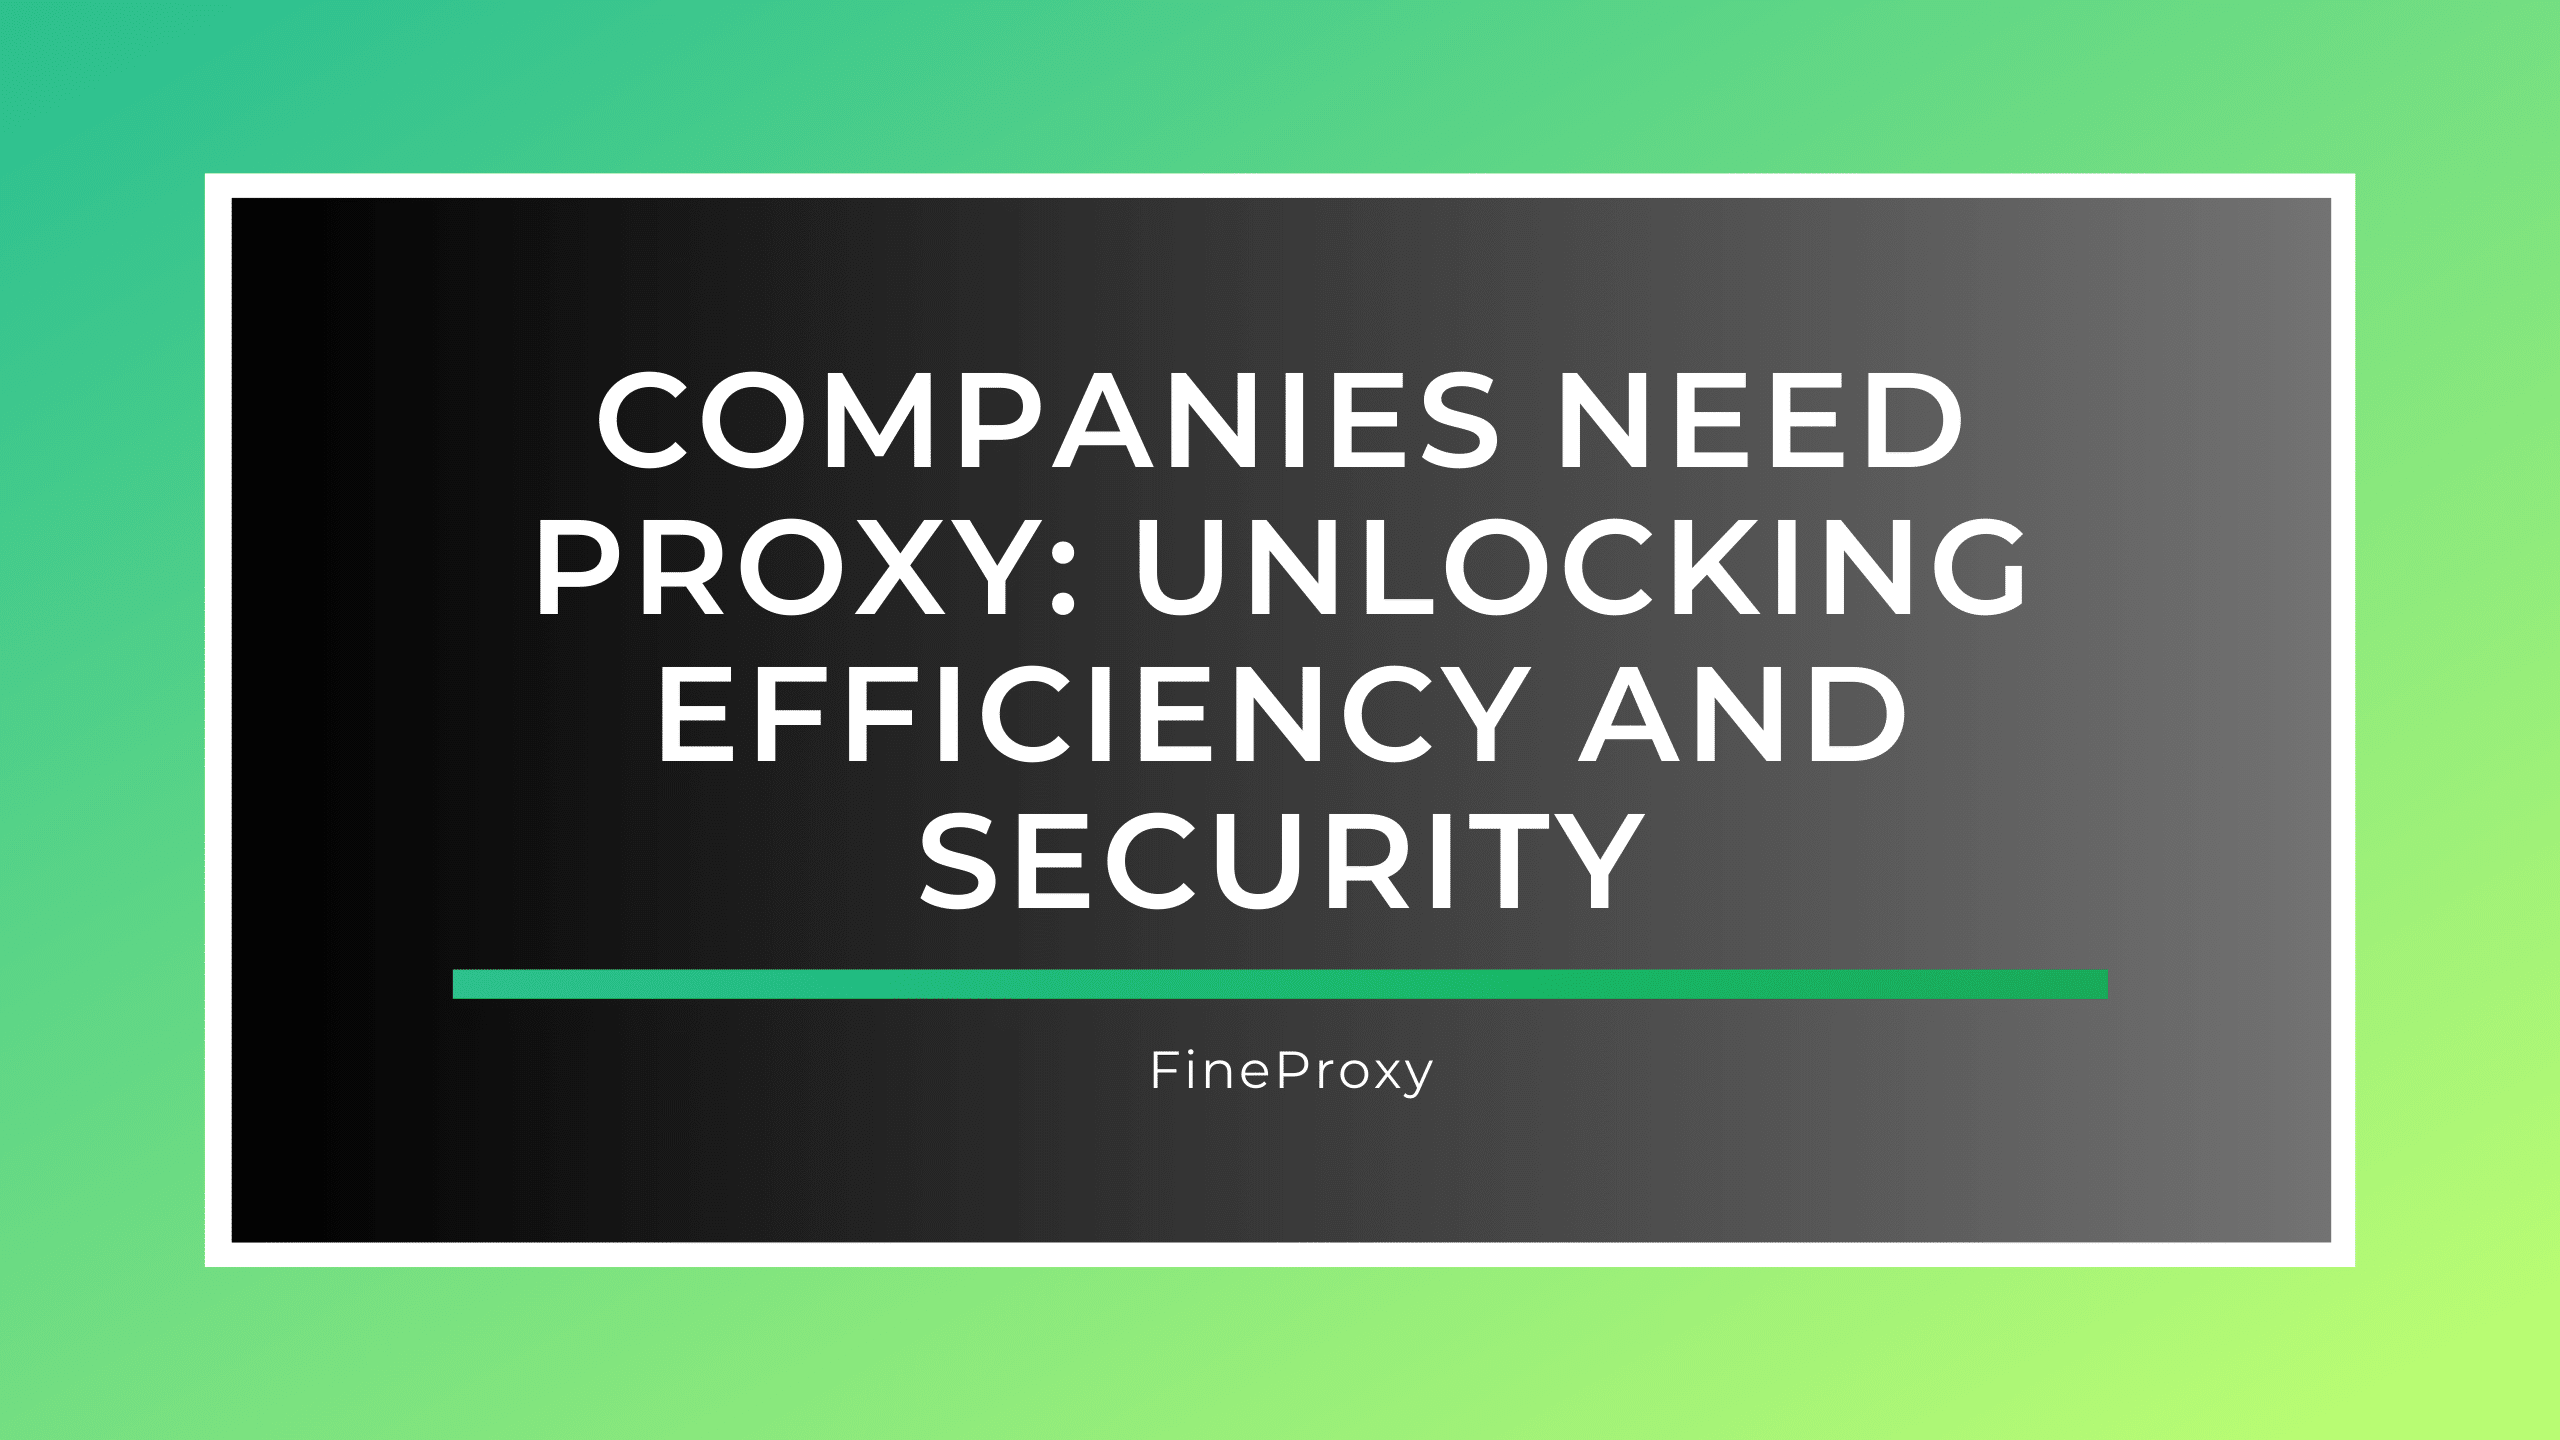 Firmy potrzebują proxy: odblokowanie wydajności i bezpieczeństwa